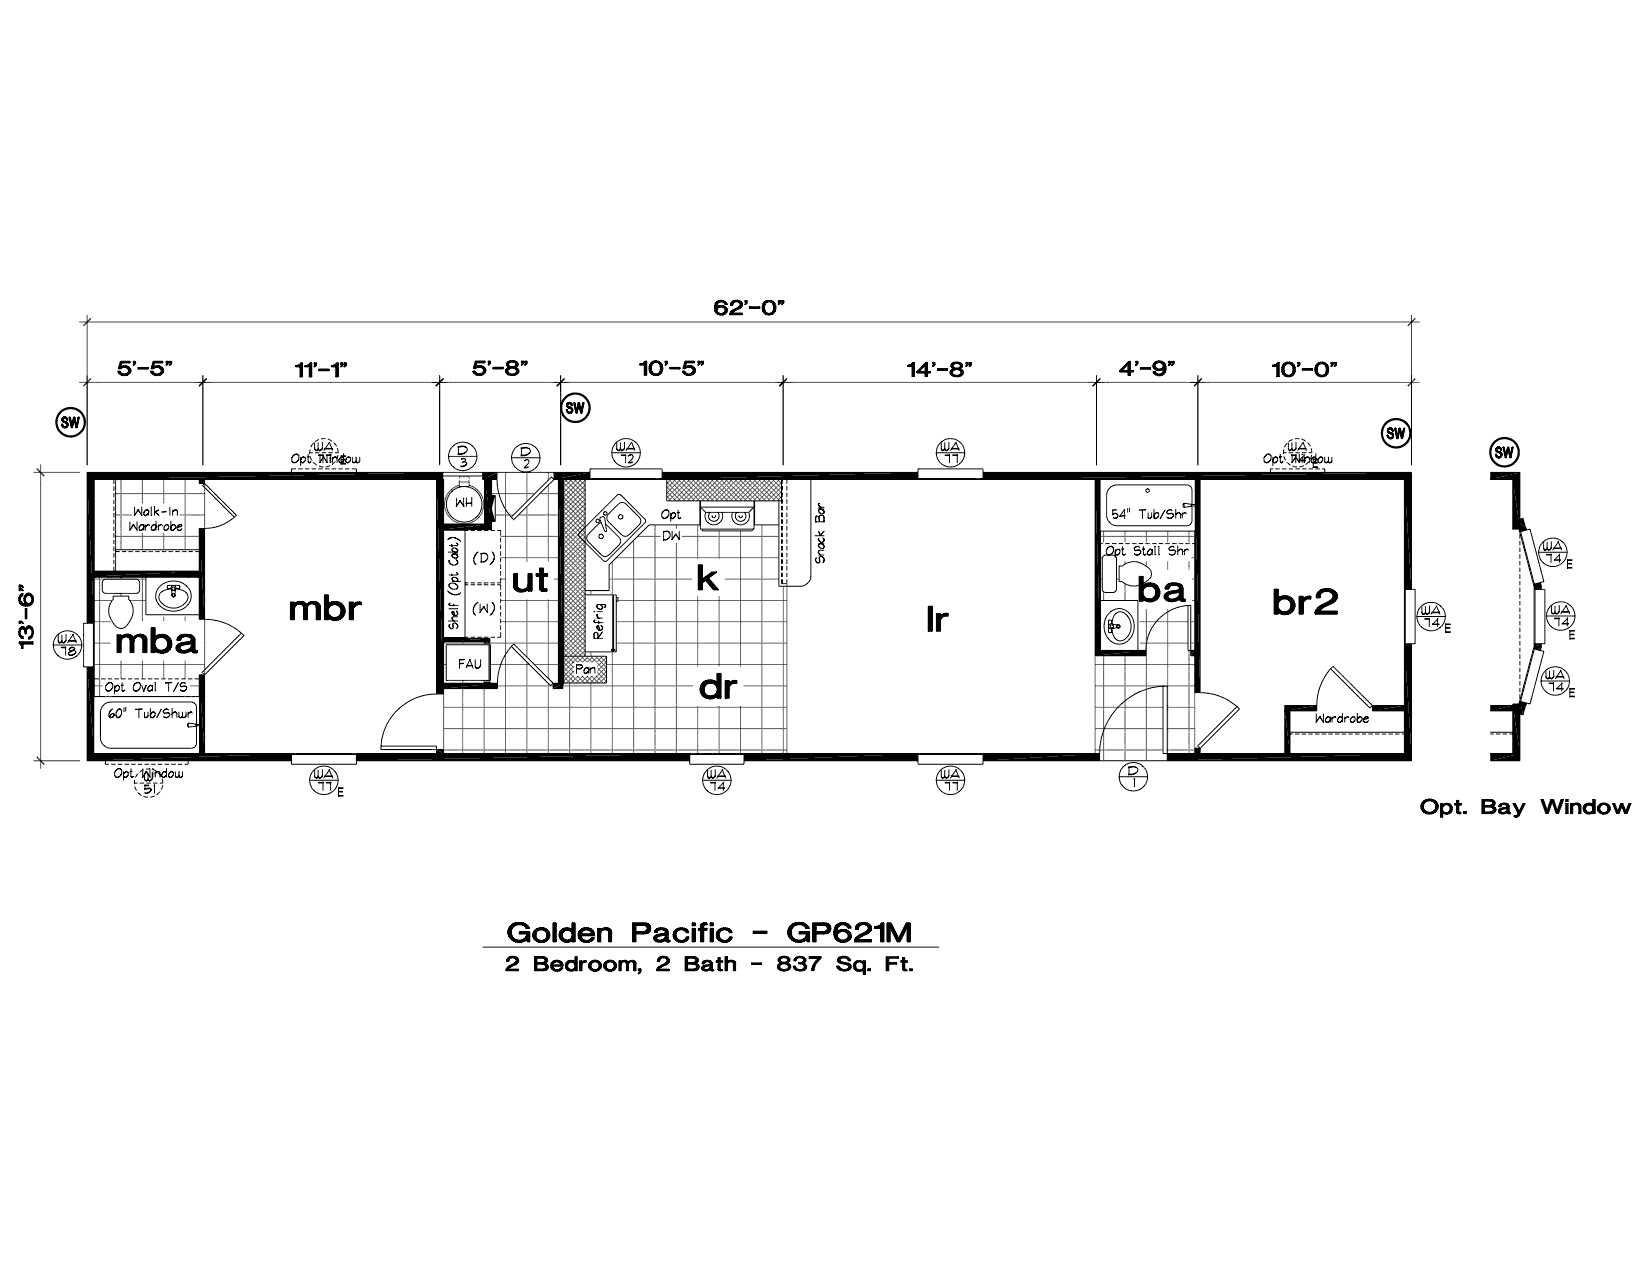 1997 fleetwood mobile home floor plan